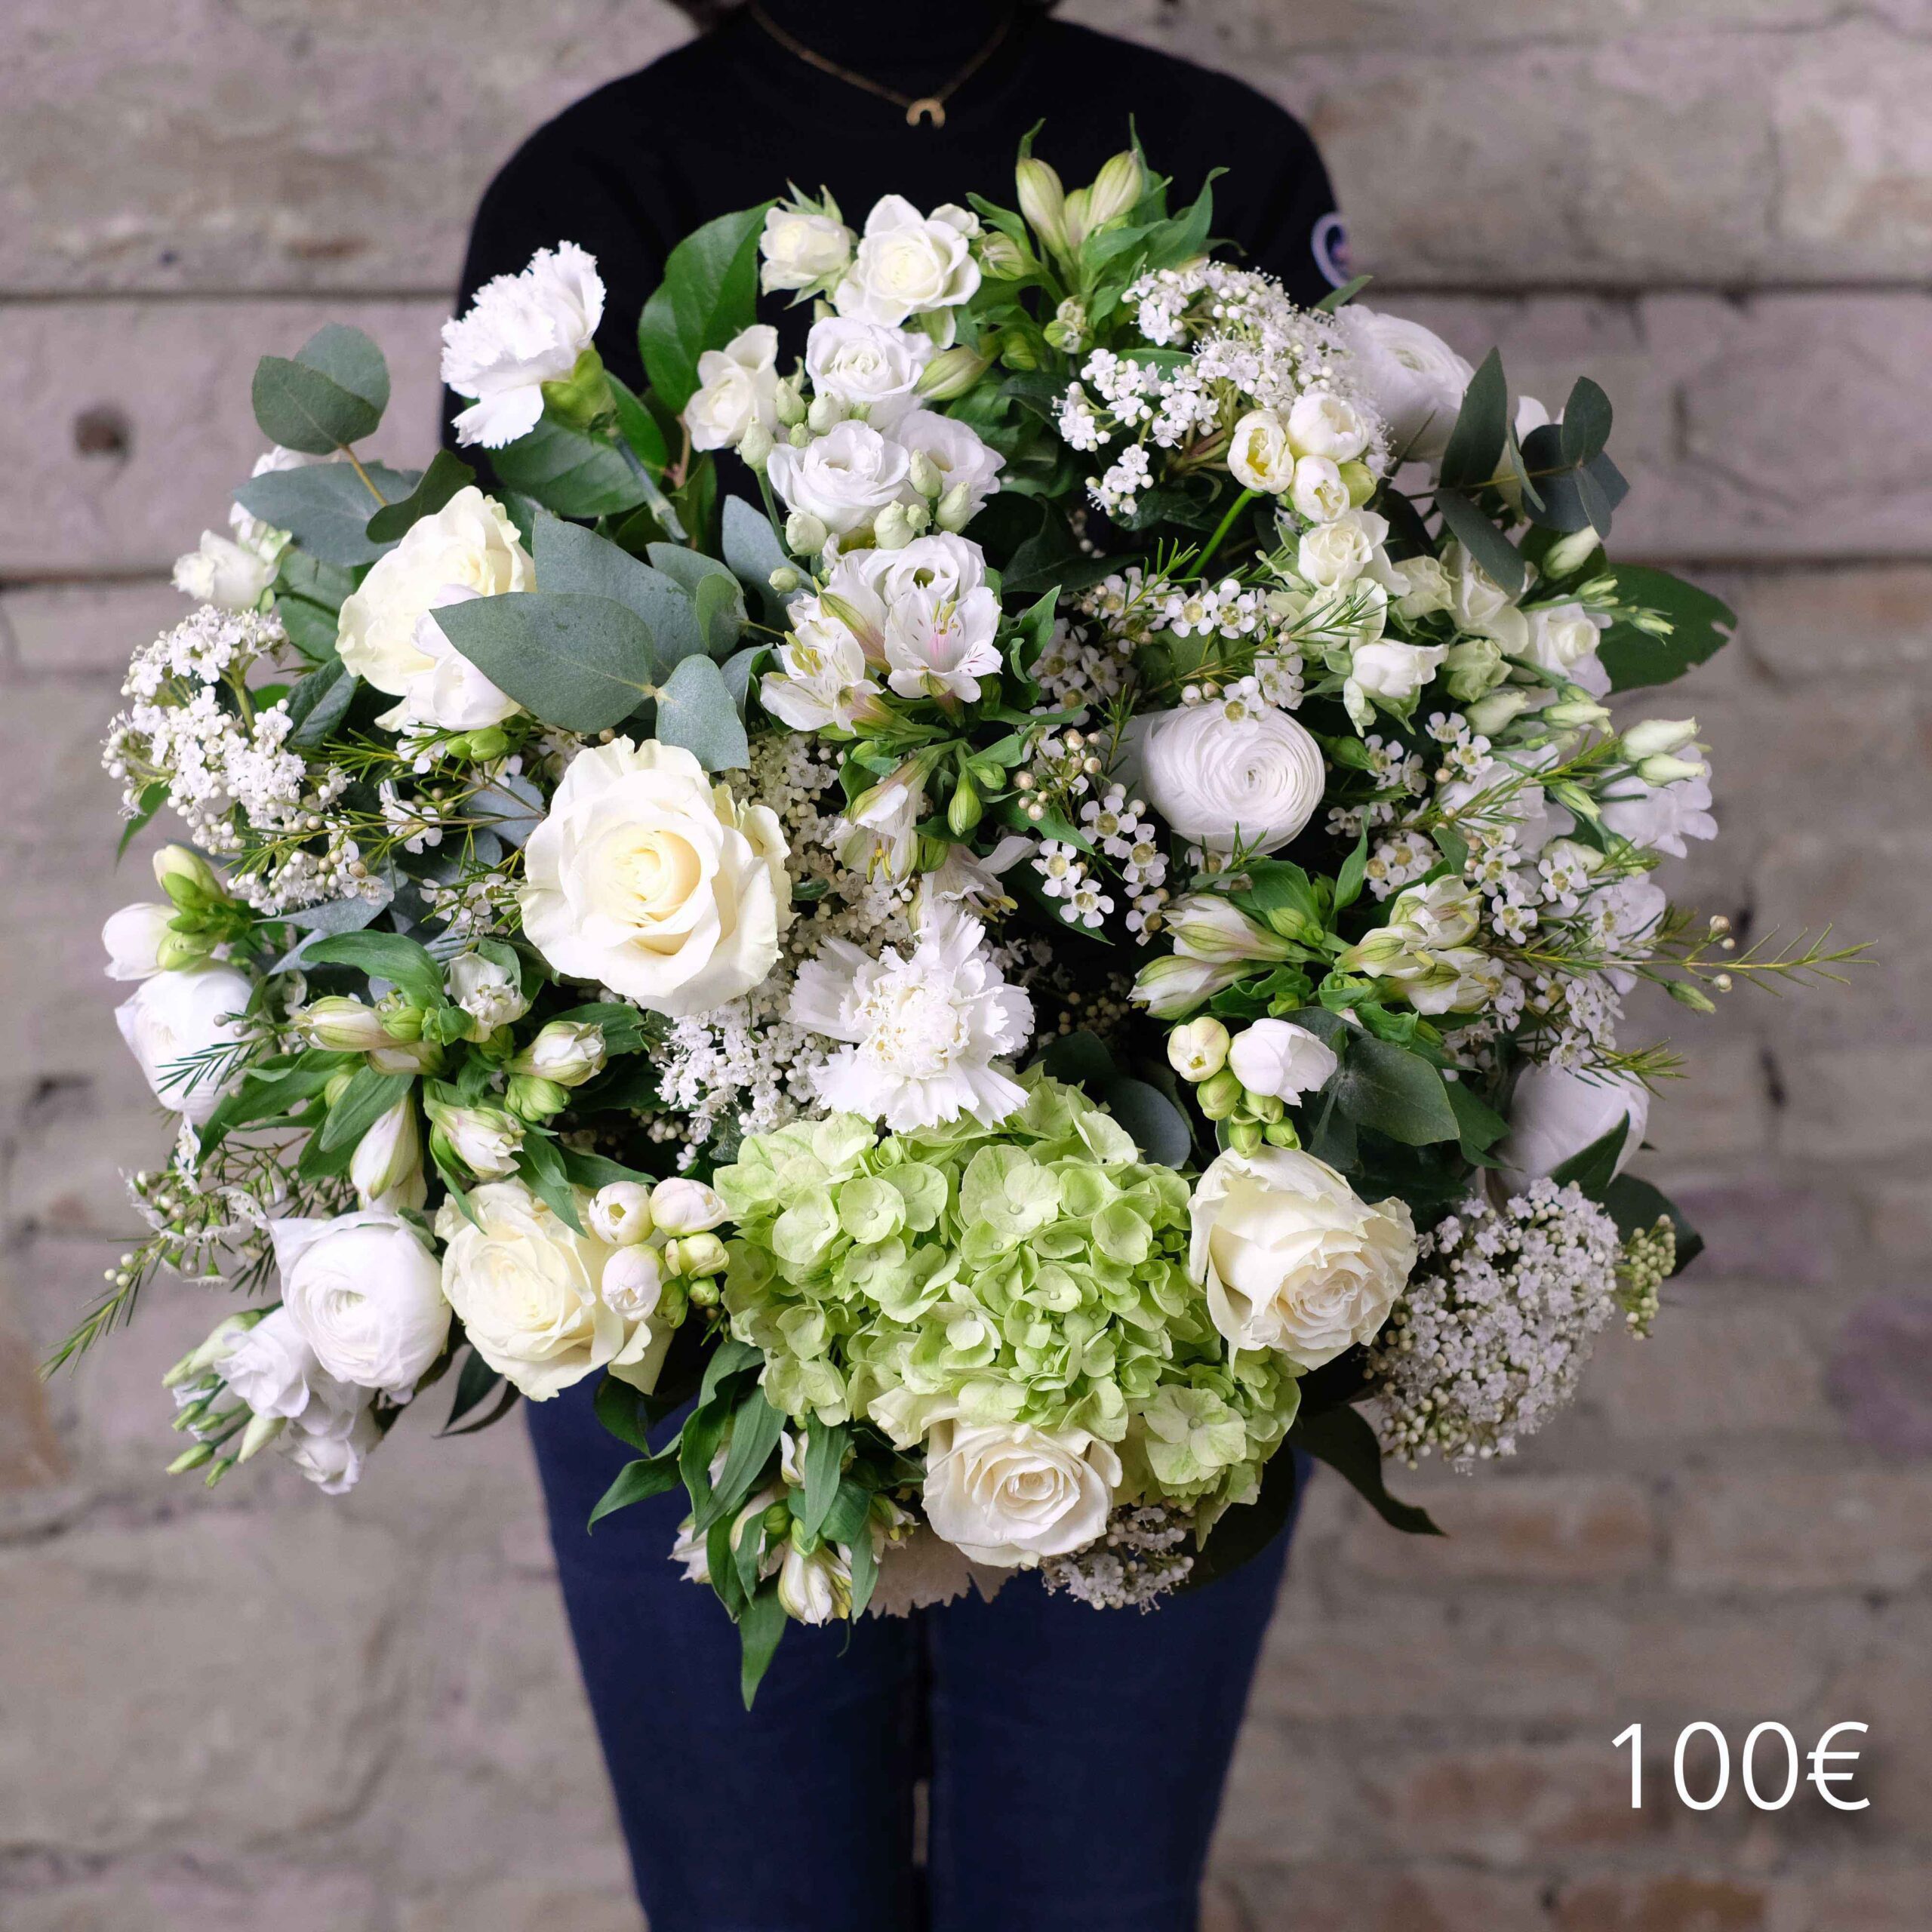 2_bouquet-fleurs-elegance-100